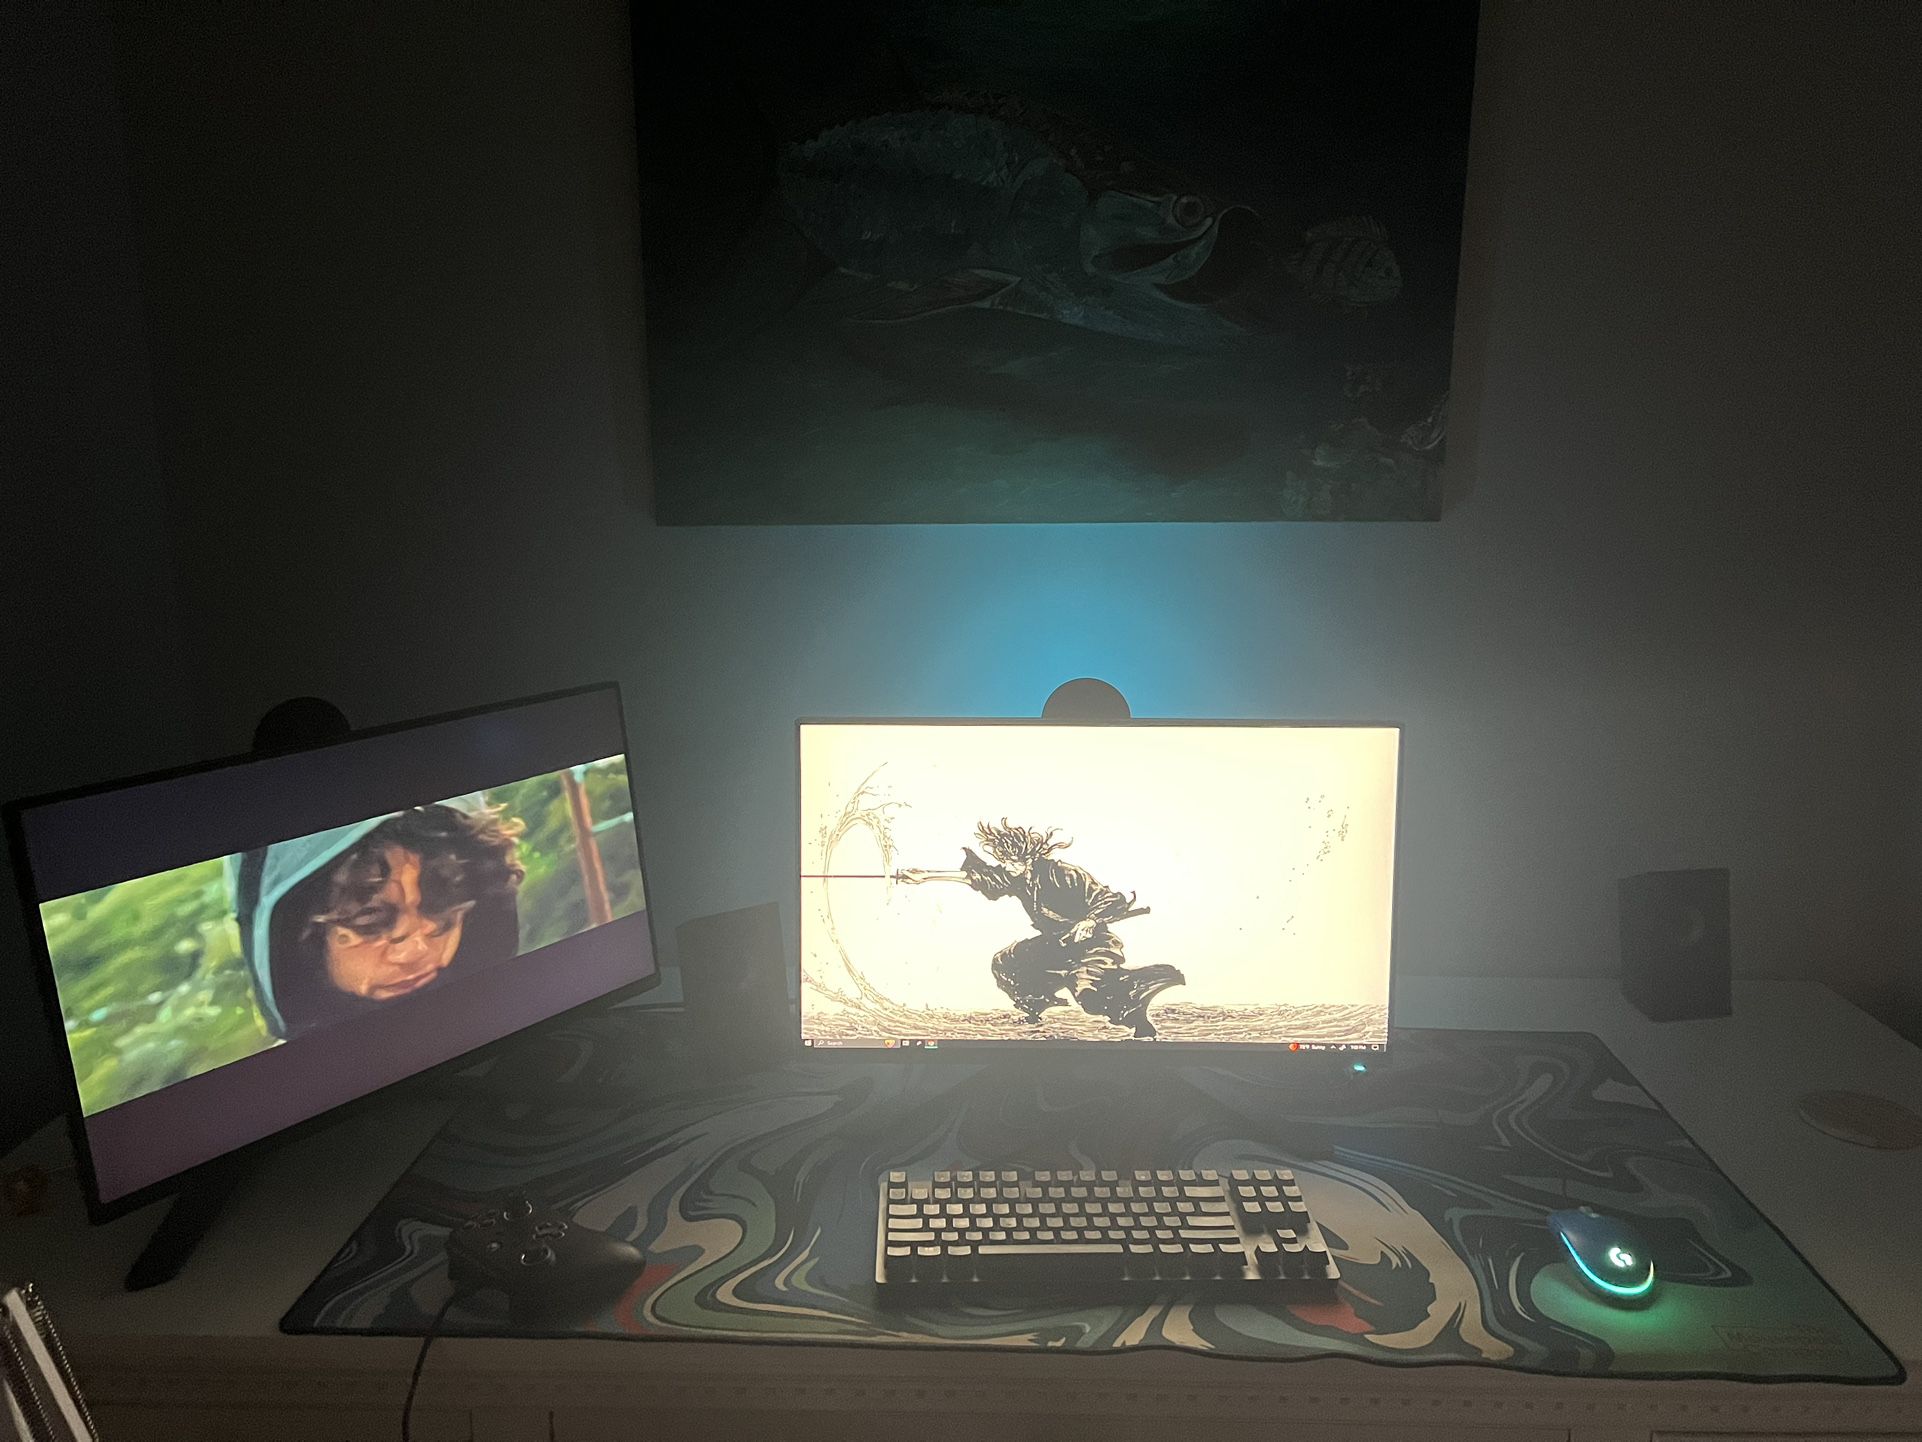 Gaming PC Setup 